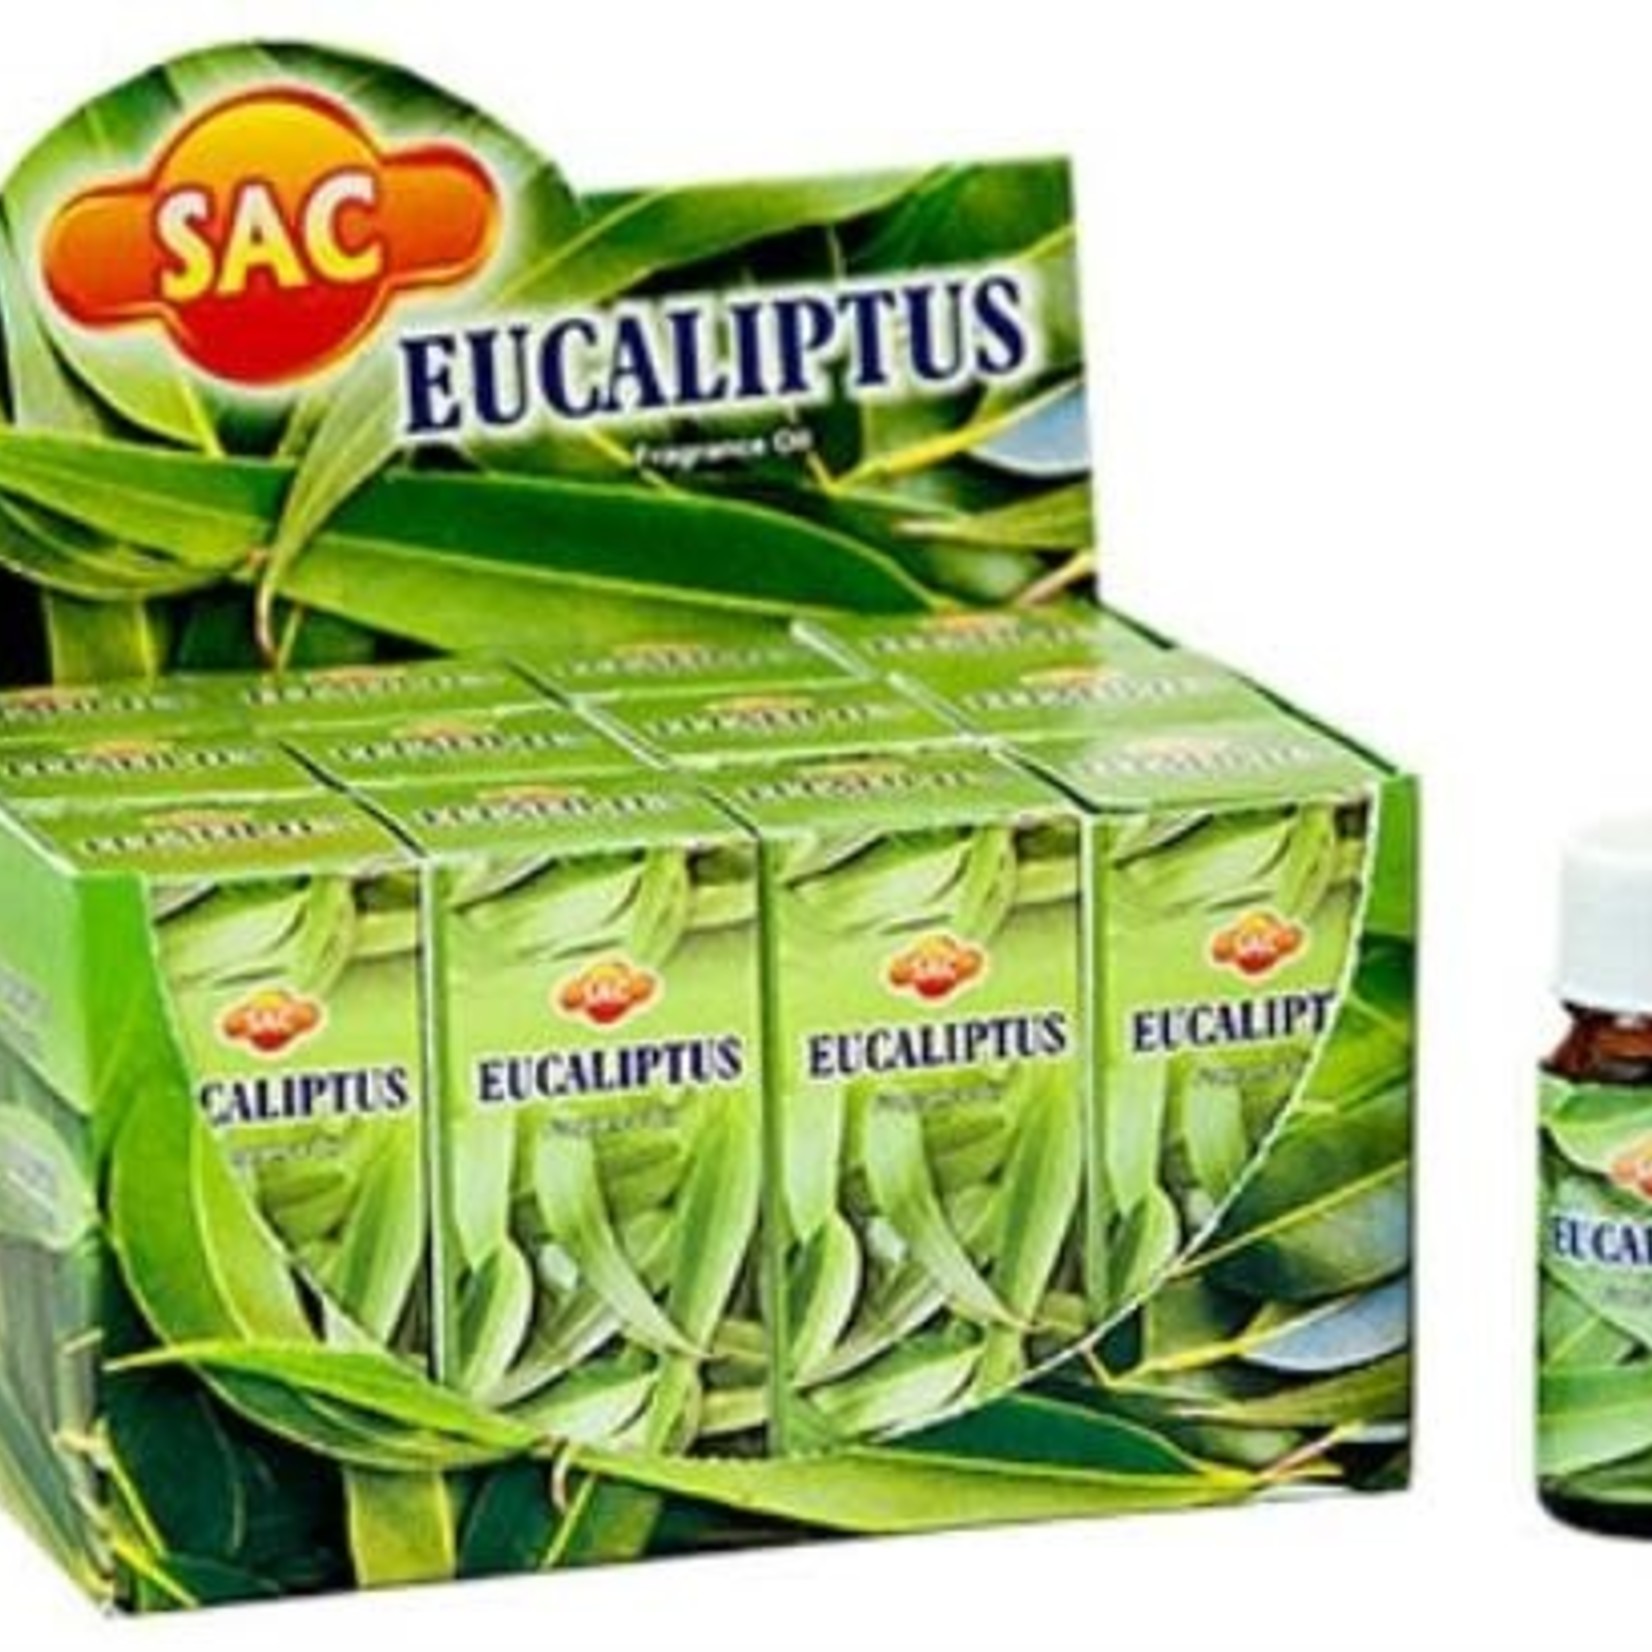 Eucalyptus Fragrance Oil (SAC)